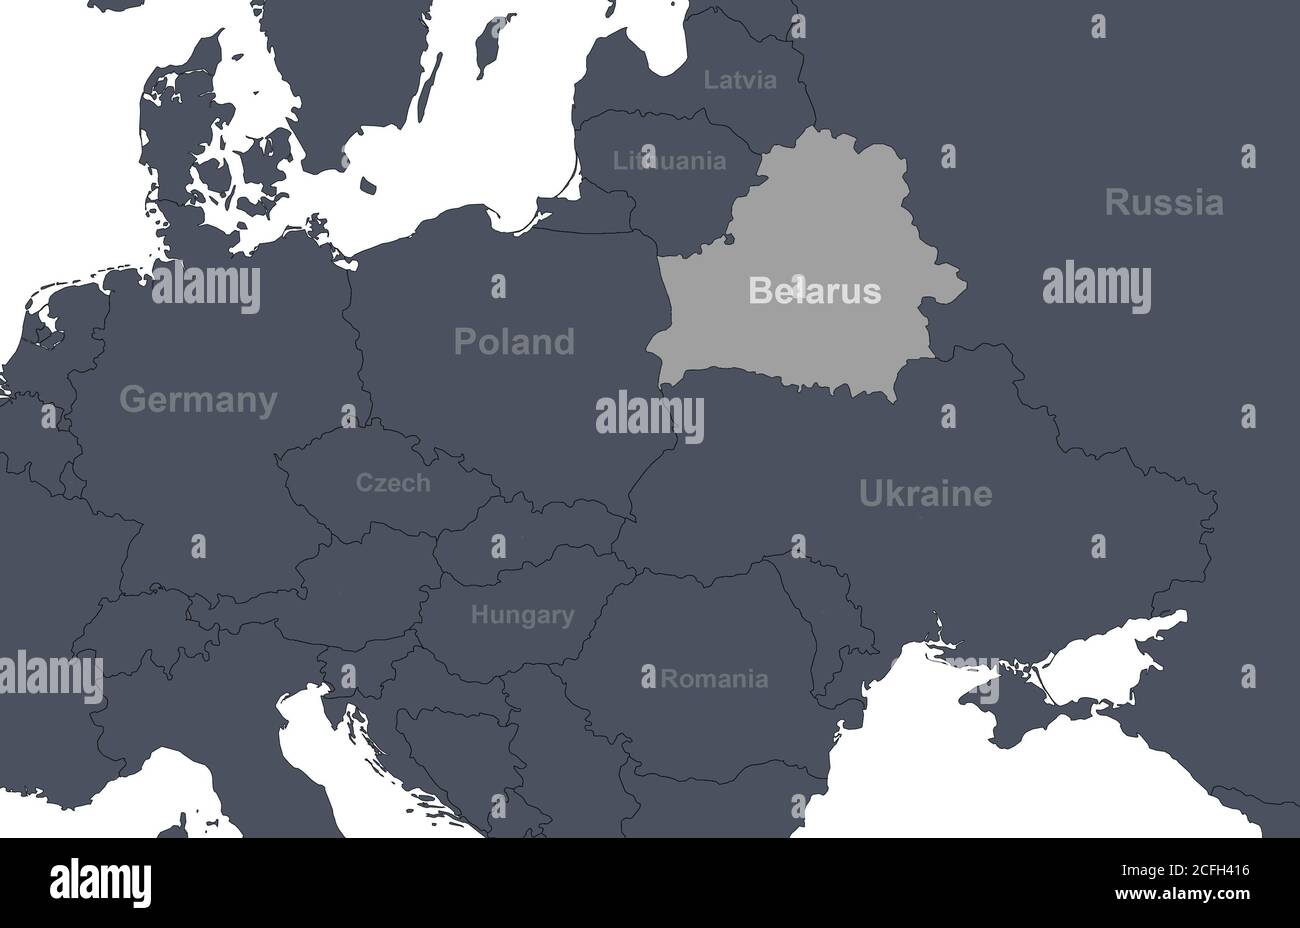 Belarus auf Europa skizzieren Karte mit Ländern Grenzen. Ausschnitt der politischen Weltkarte, Region Mittel- und Osteuropa mit Silhouette. Erdungsisolat Stockfoto